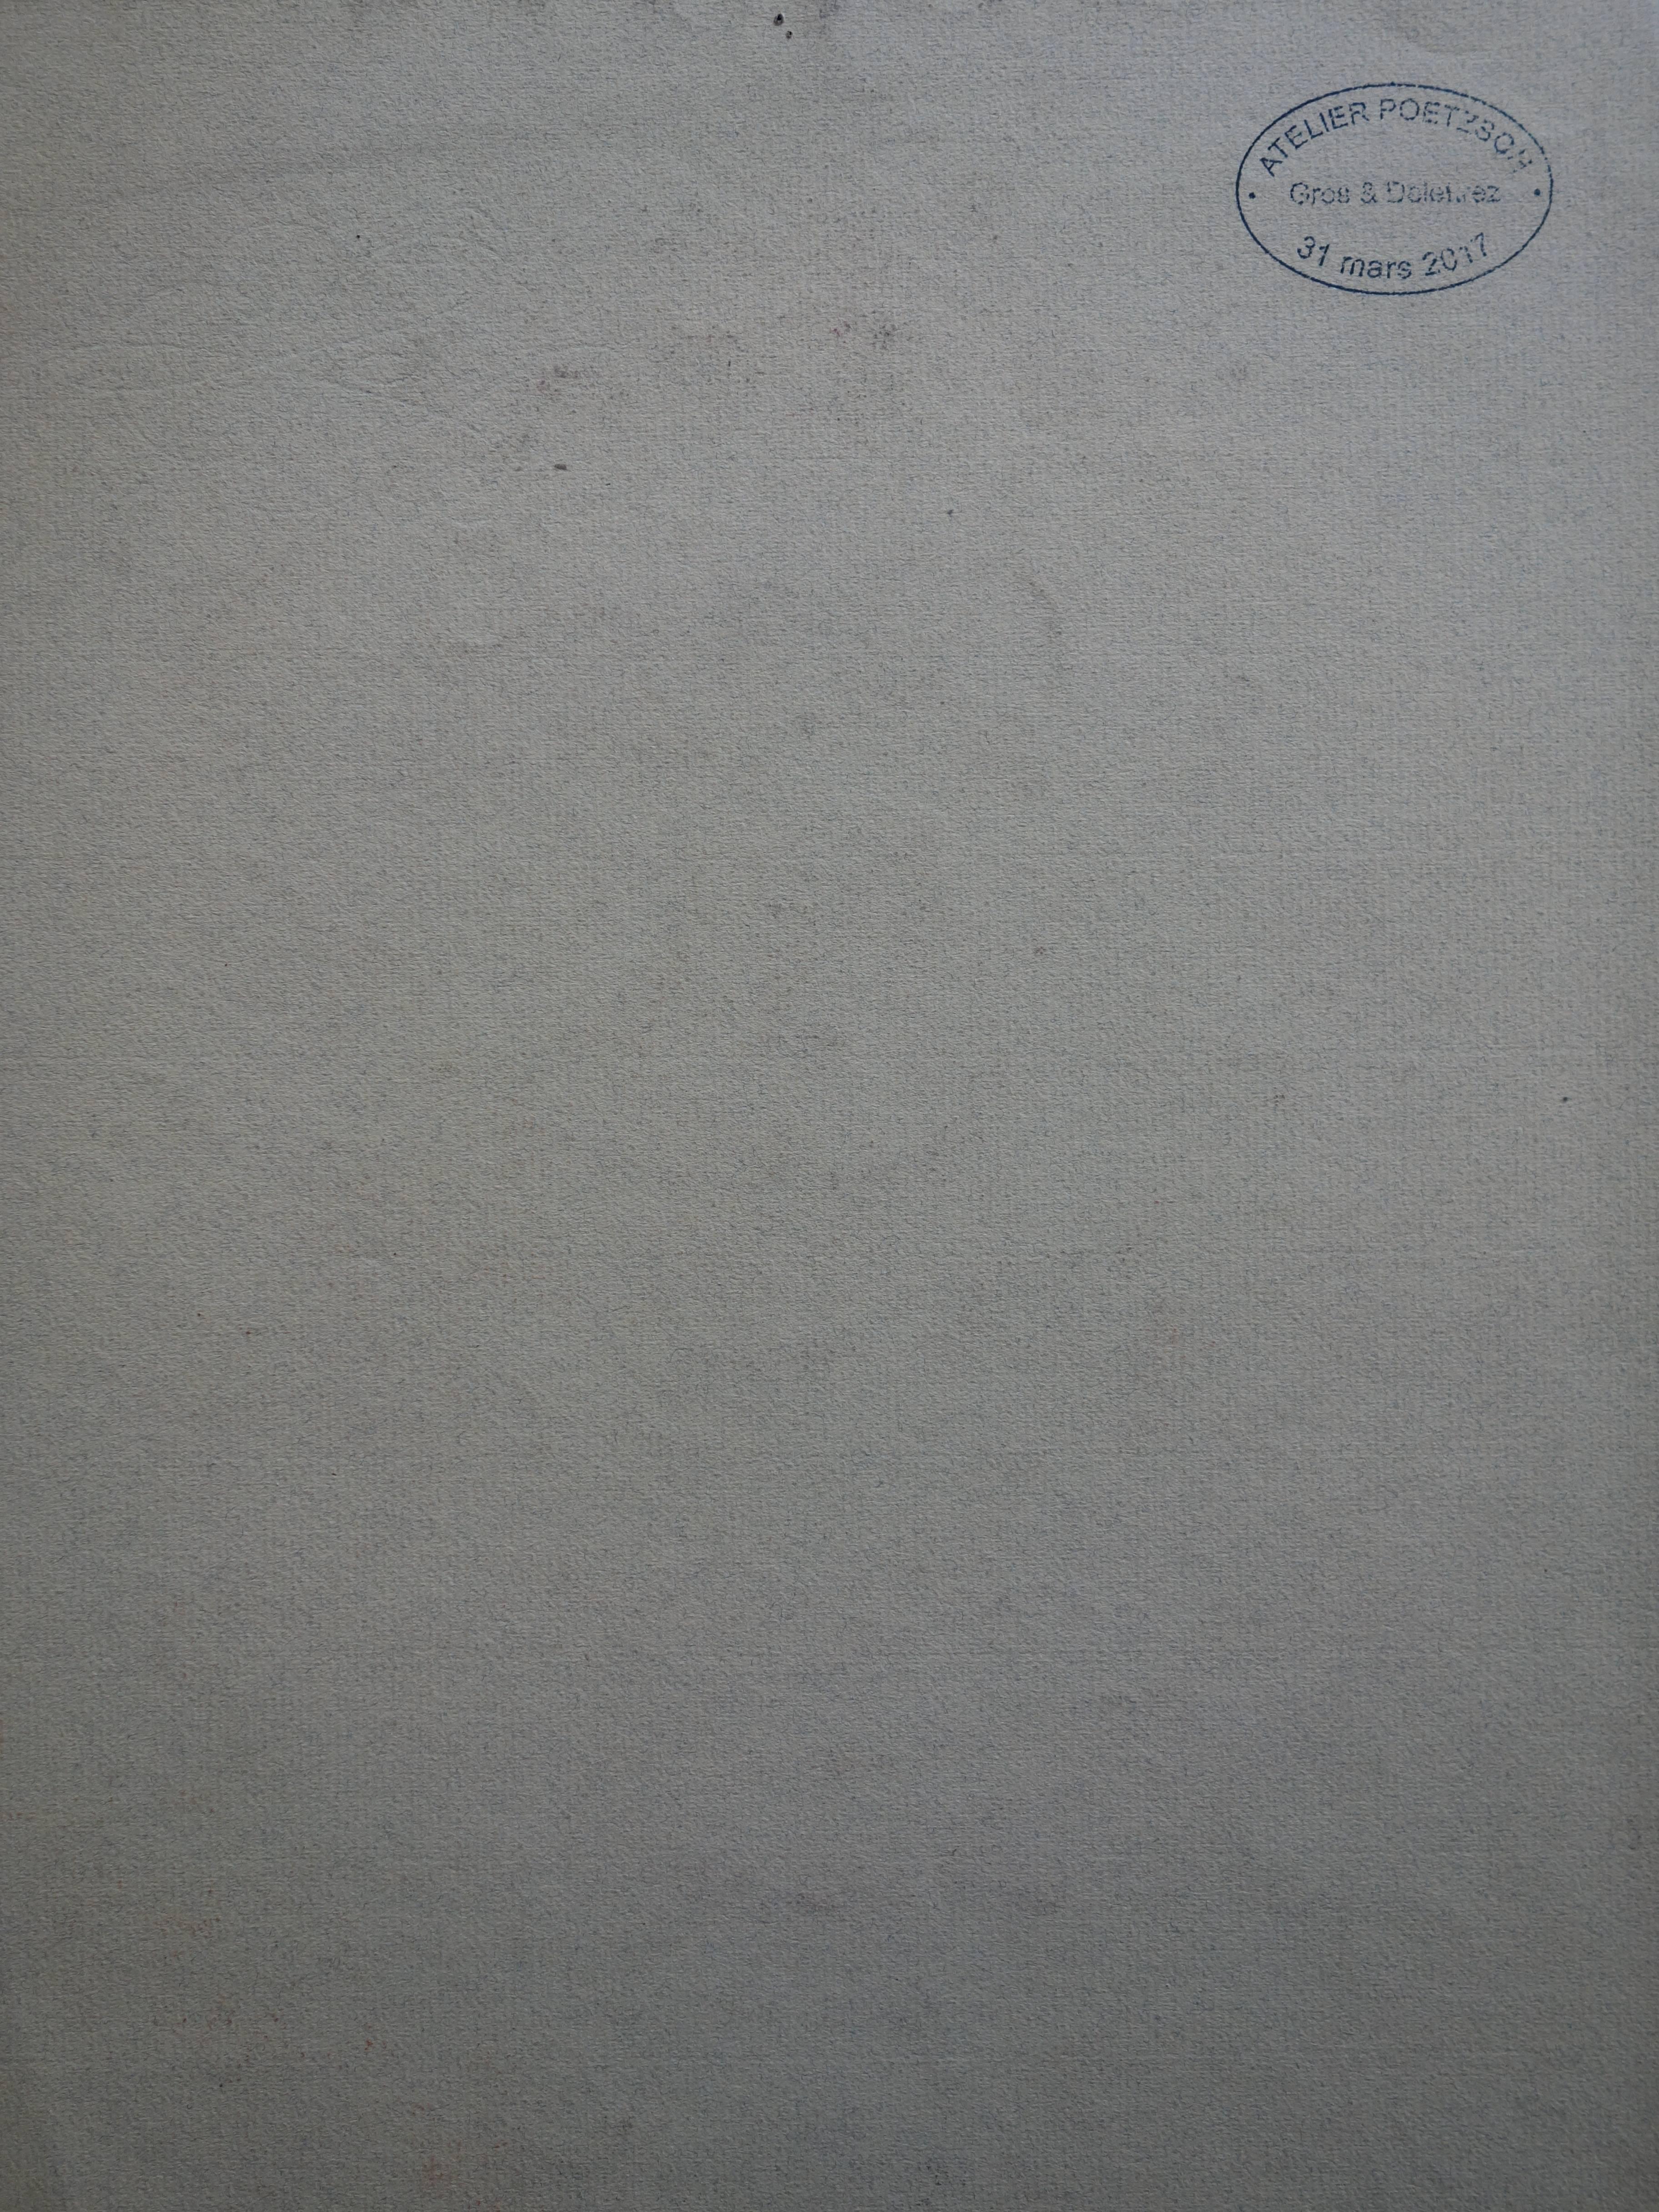 Gustave Poetzsch (1870-1950) 
Die Dame mit dem gelben Hut

Originalzeichnung mit Holzkohle
Signiert unten links
auf getöntem Leinenpapier mit Wasserzeichen 24 x 31 cm (ca. 9 x 12 in)
Stempel der Nachlassversteigerung auf der Rückseite

Sehr guter